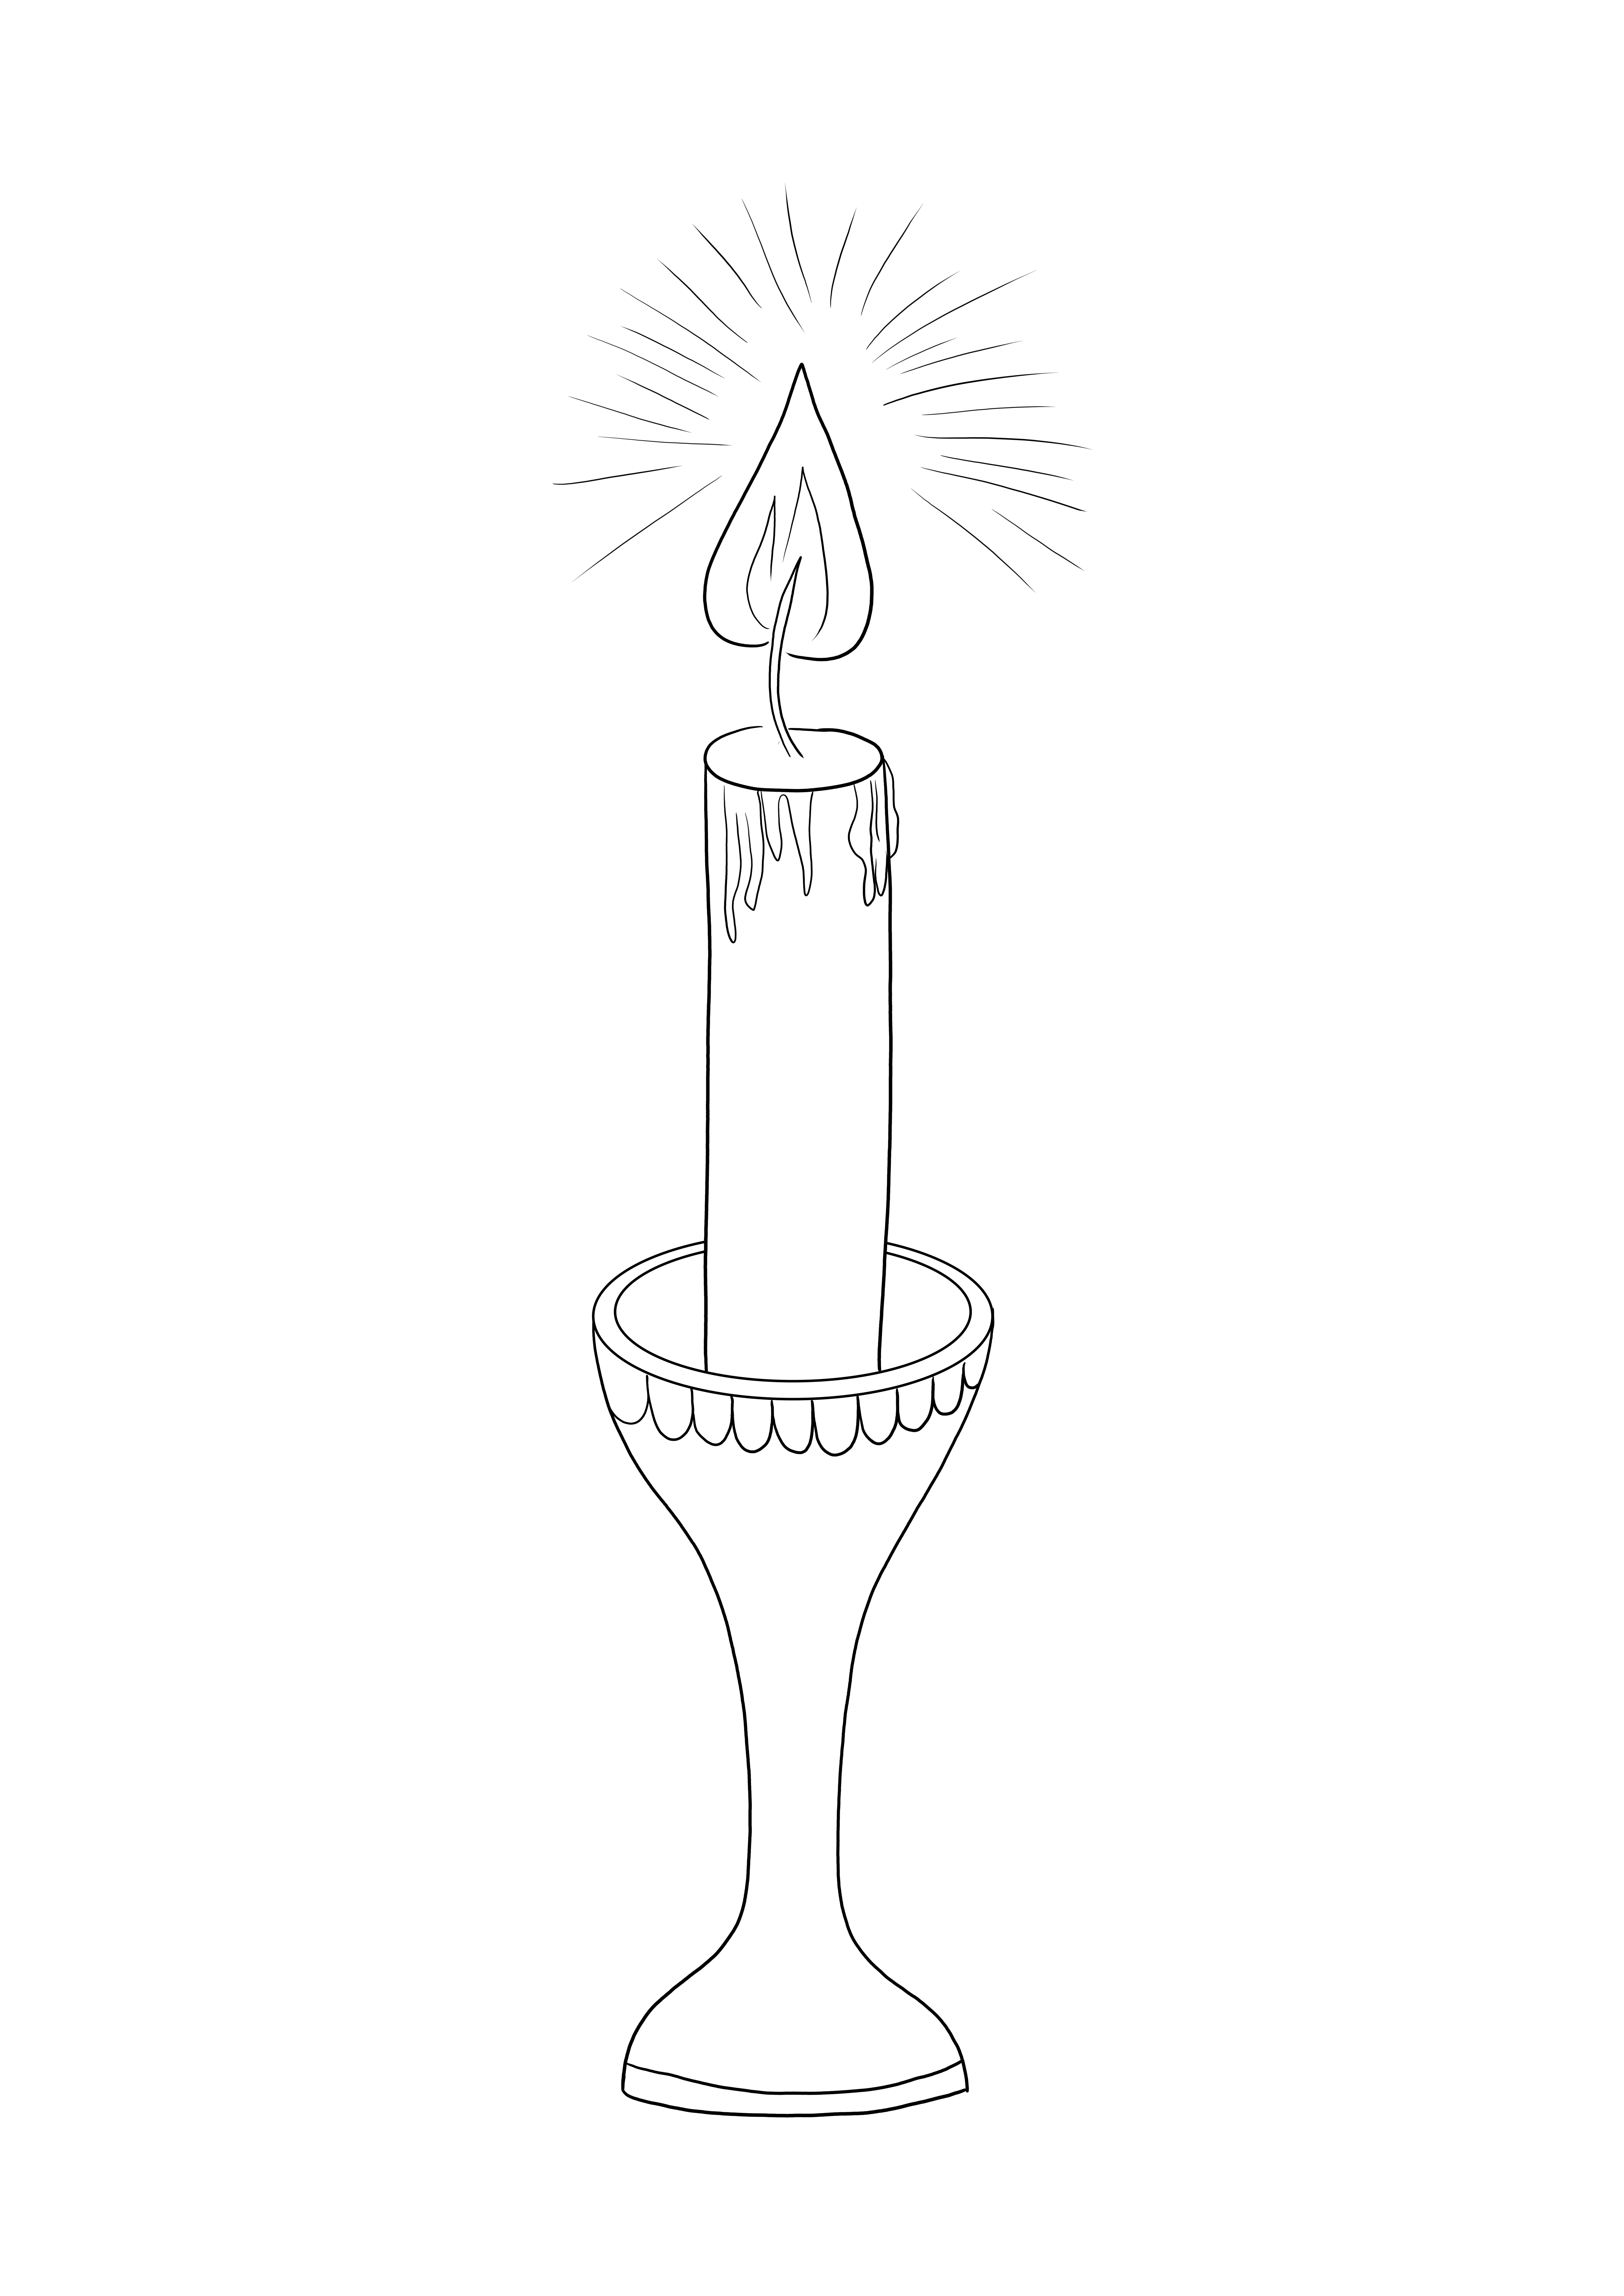 Zapalona świeca gotowa do pokolorowania na radosne obchody Bożego Narodzenia — do pobrania lub wydrukowania bezpłatnie